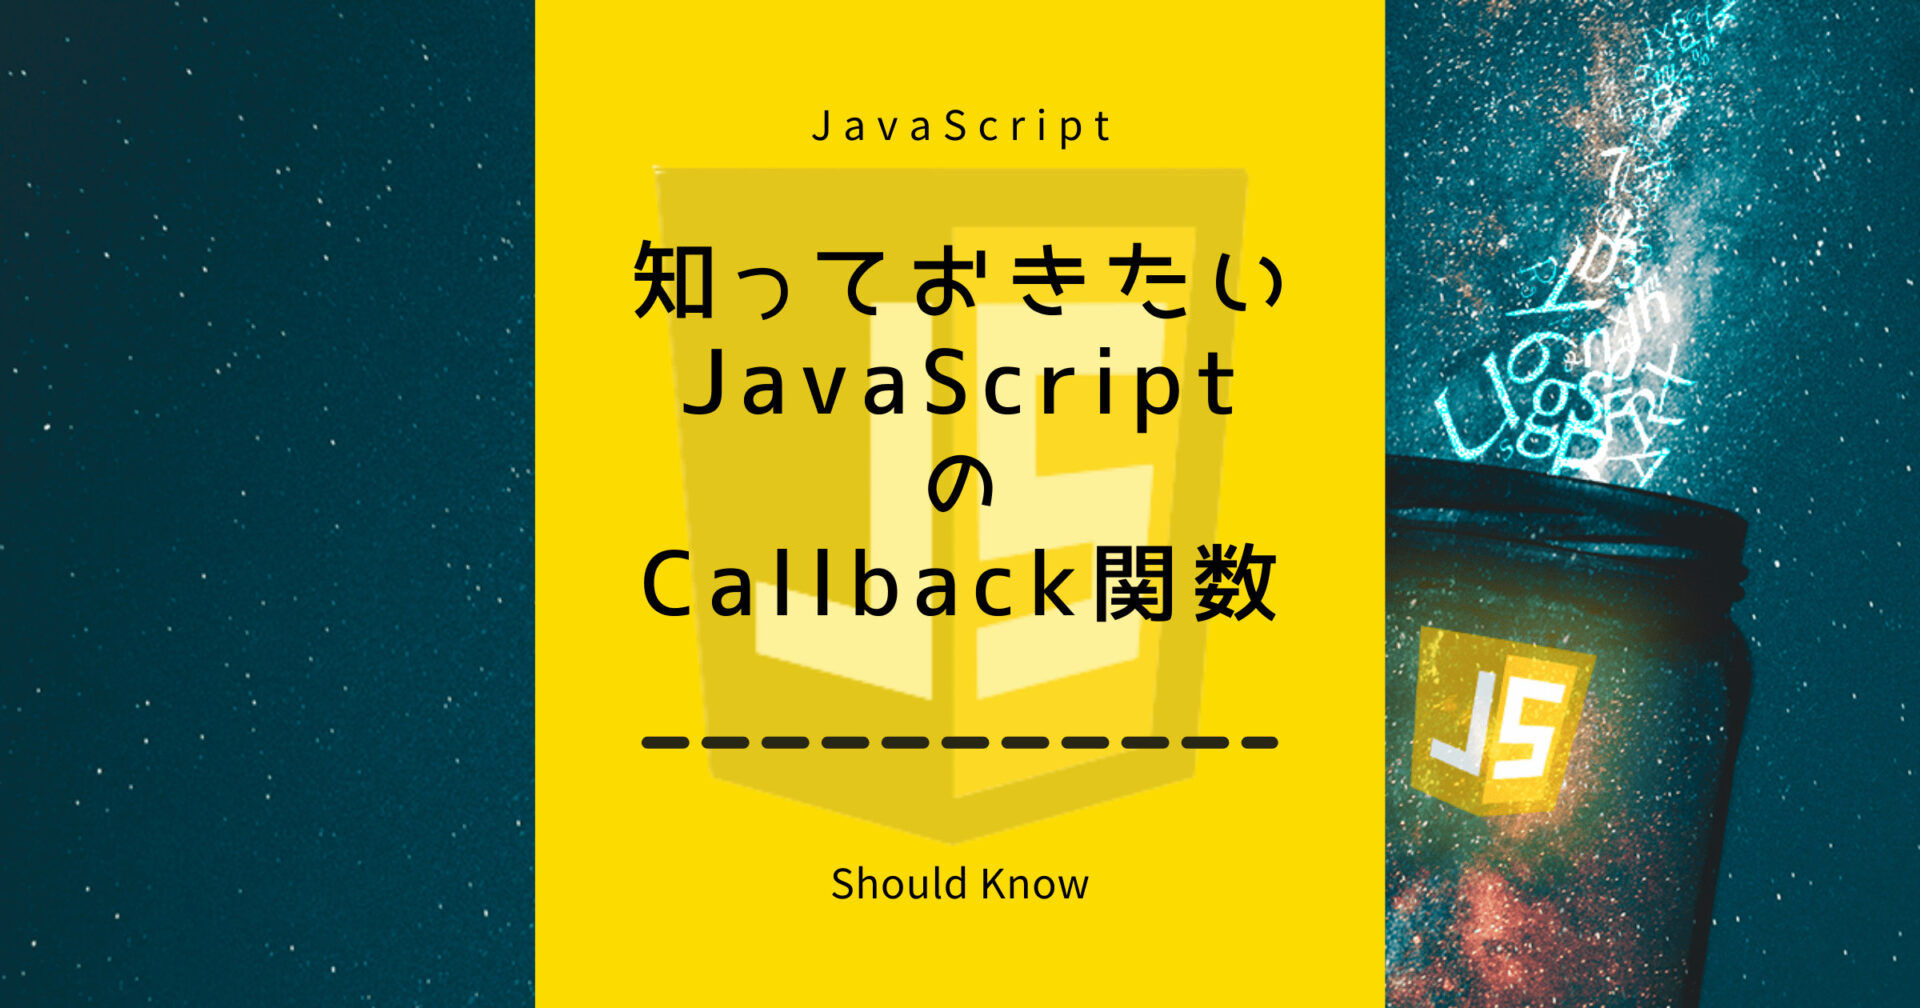 知っておきたいJavaScriptのコールバック関数について